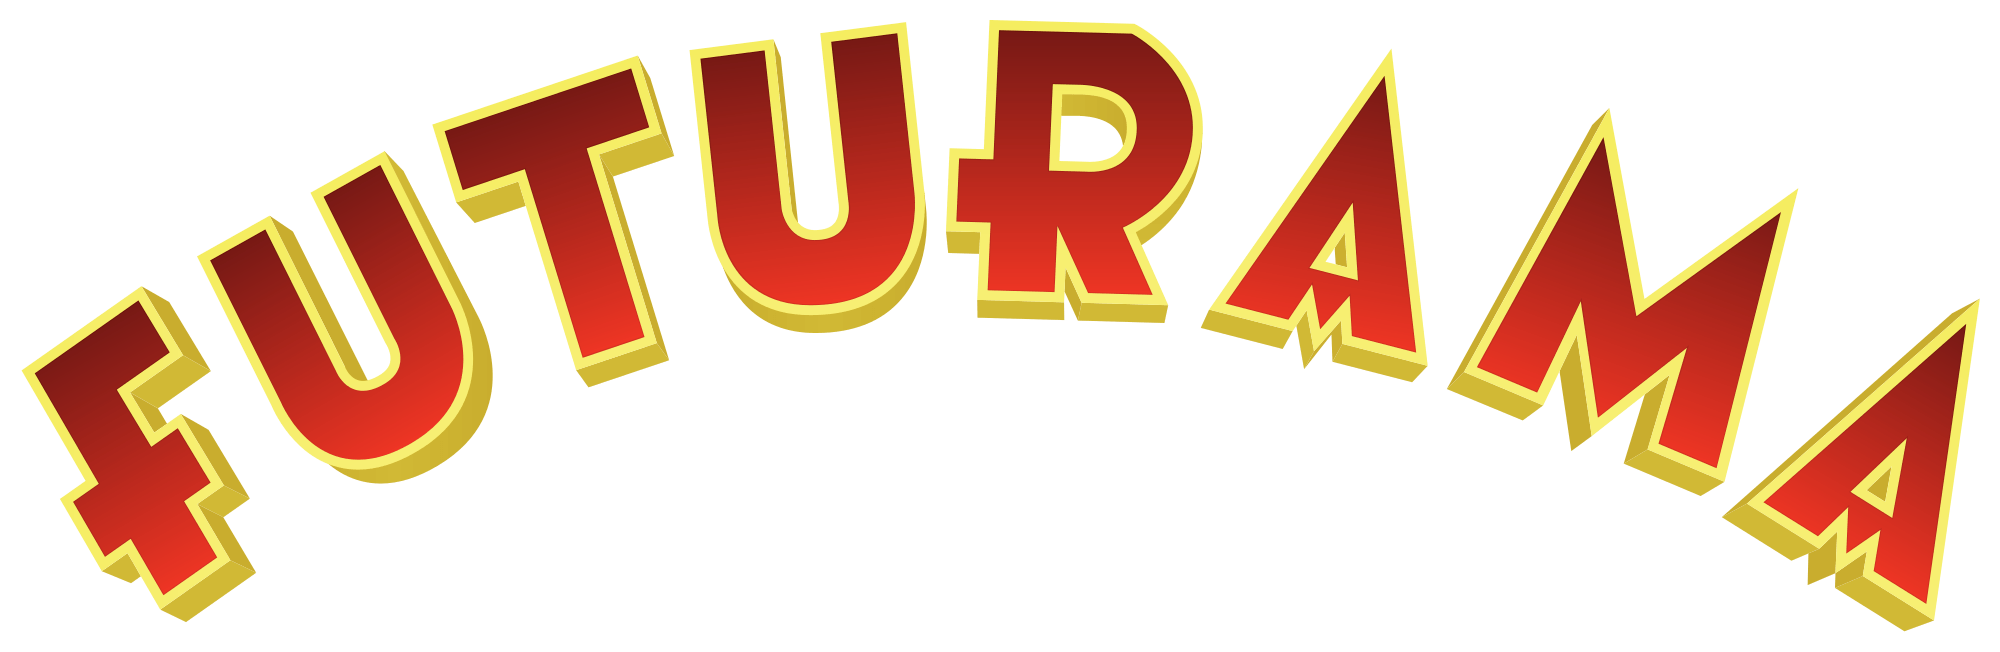 Futurama Logo - Futurama 1999 logo.svg